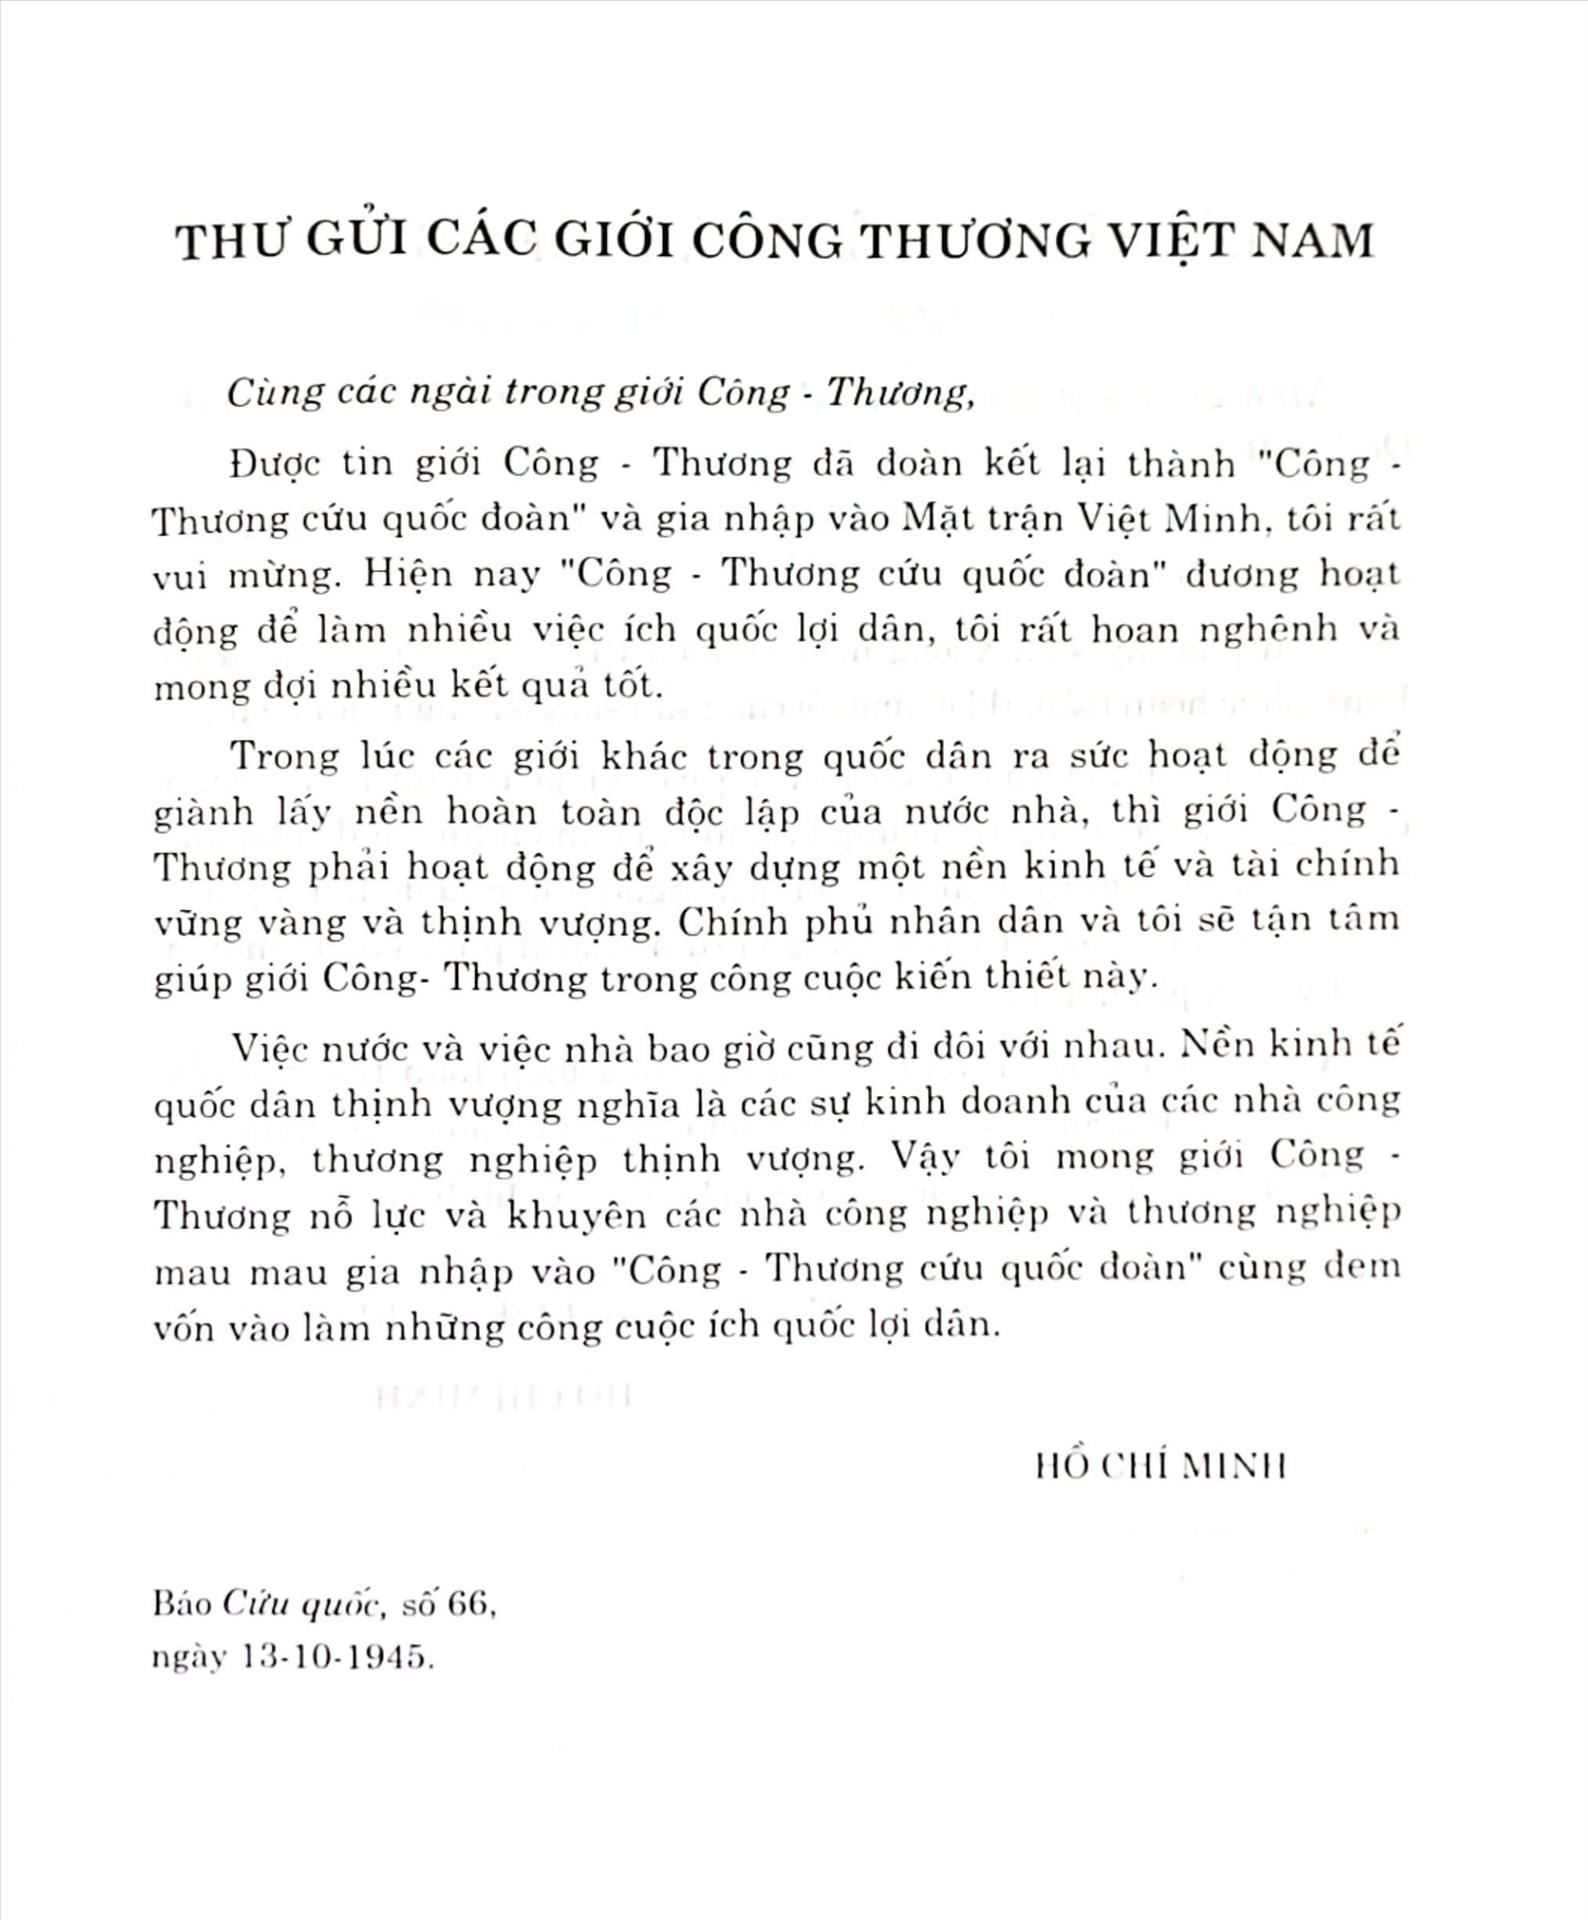 Ảnh: Hồ Chí Minh toàn tập, tập 4, trang 49 - NXB Chính trị Quốc gia, năm 2009